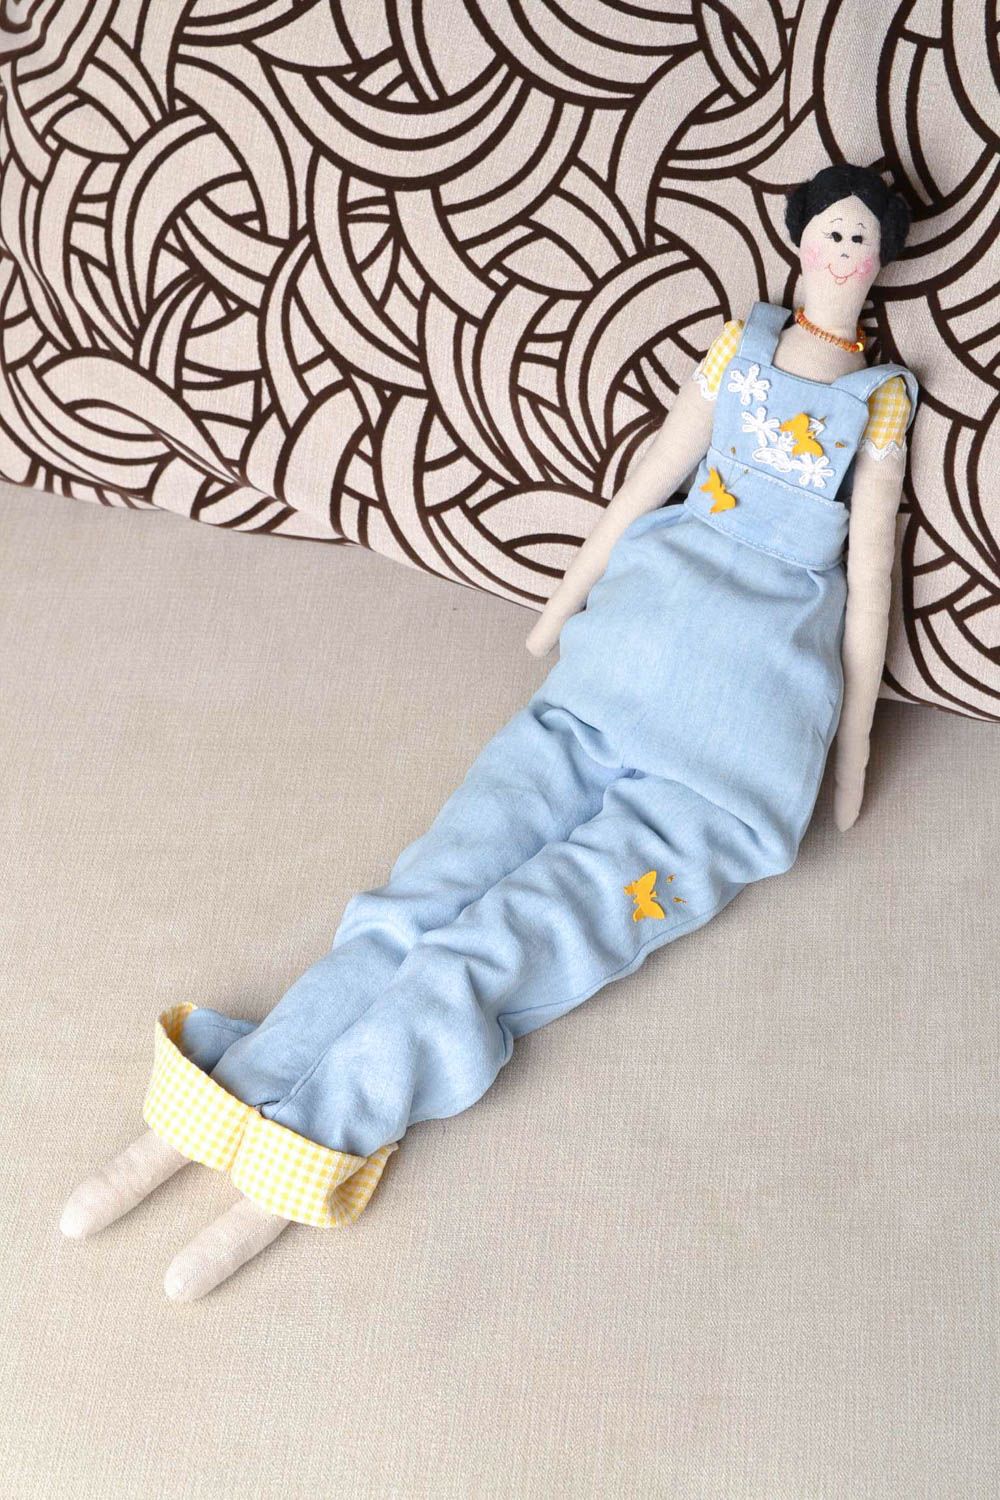 Авторская кукла из натуральных тканей игрушка ручной работы красивая детская фото 1